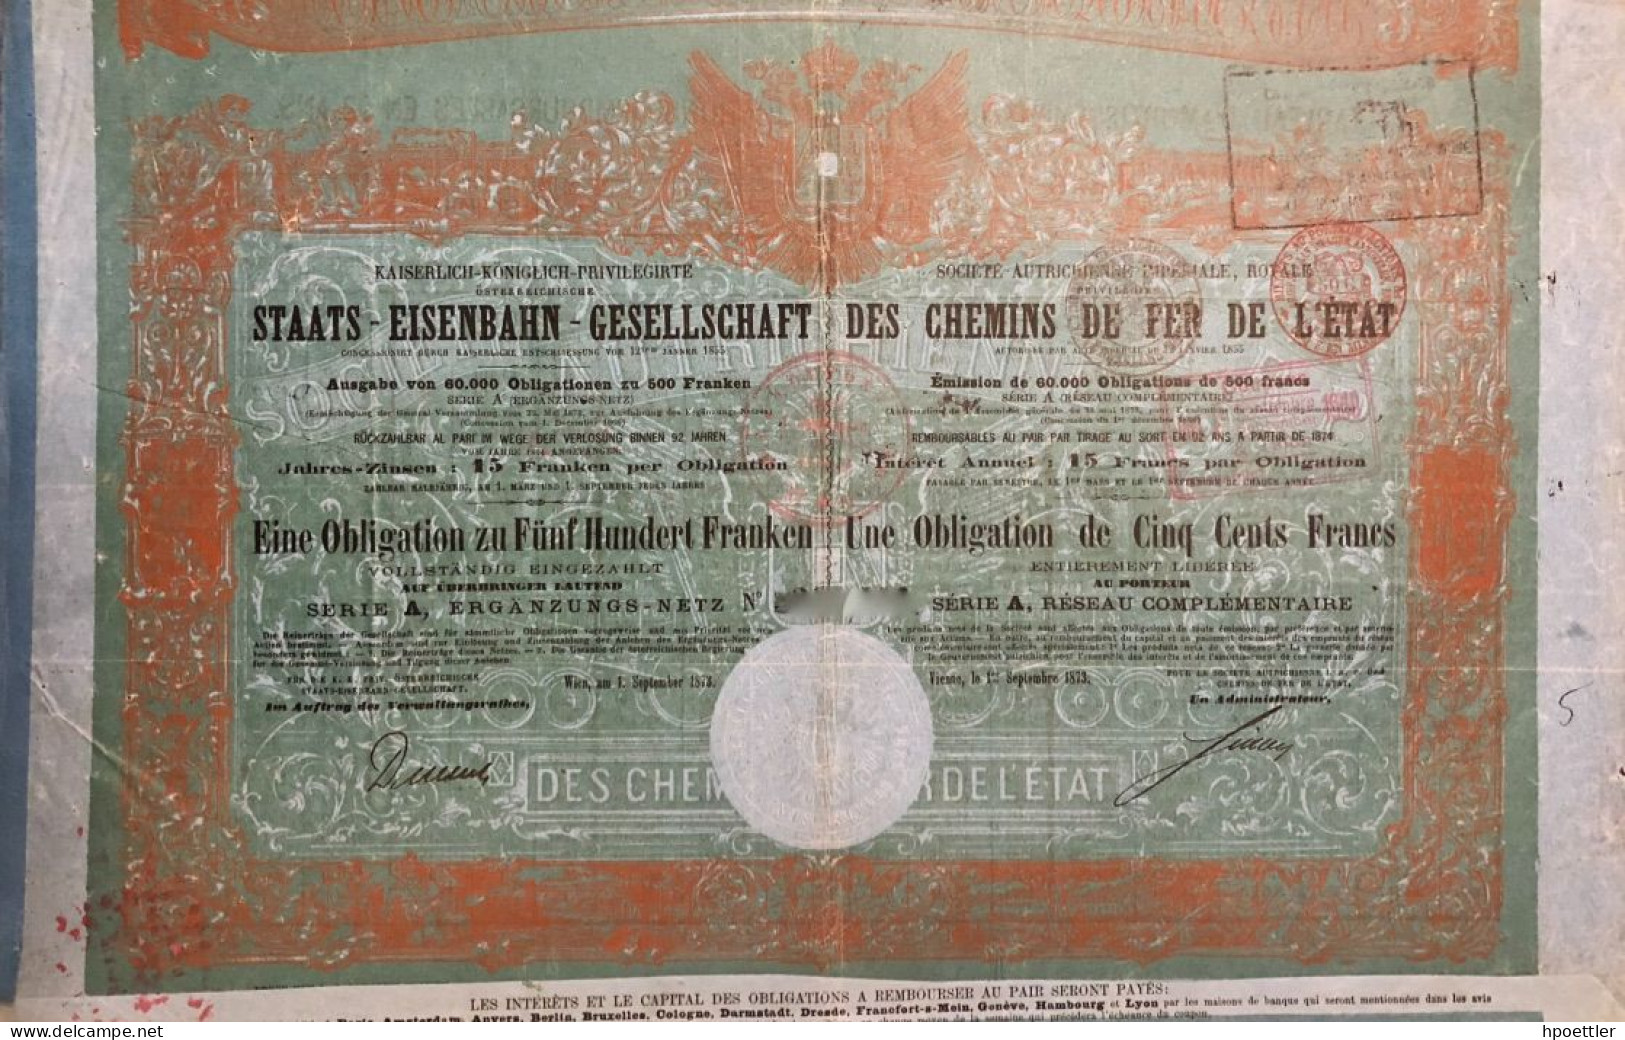 Vienne 1873: Societe Autrichienne Imperiale Royale, Privilegie Des Chemins De Fer De L'Etat - 500 Francs - Bahnwesen & Tramways